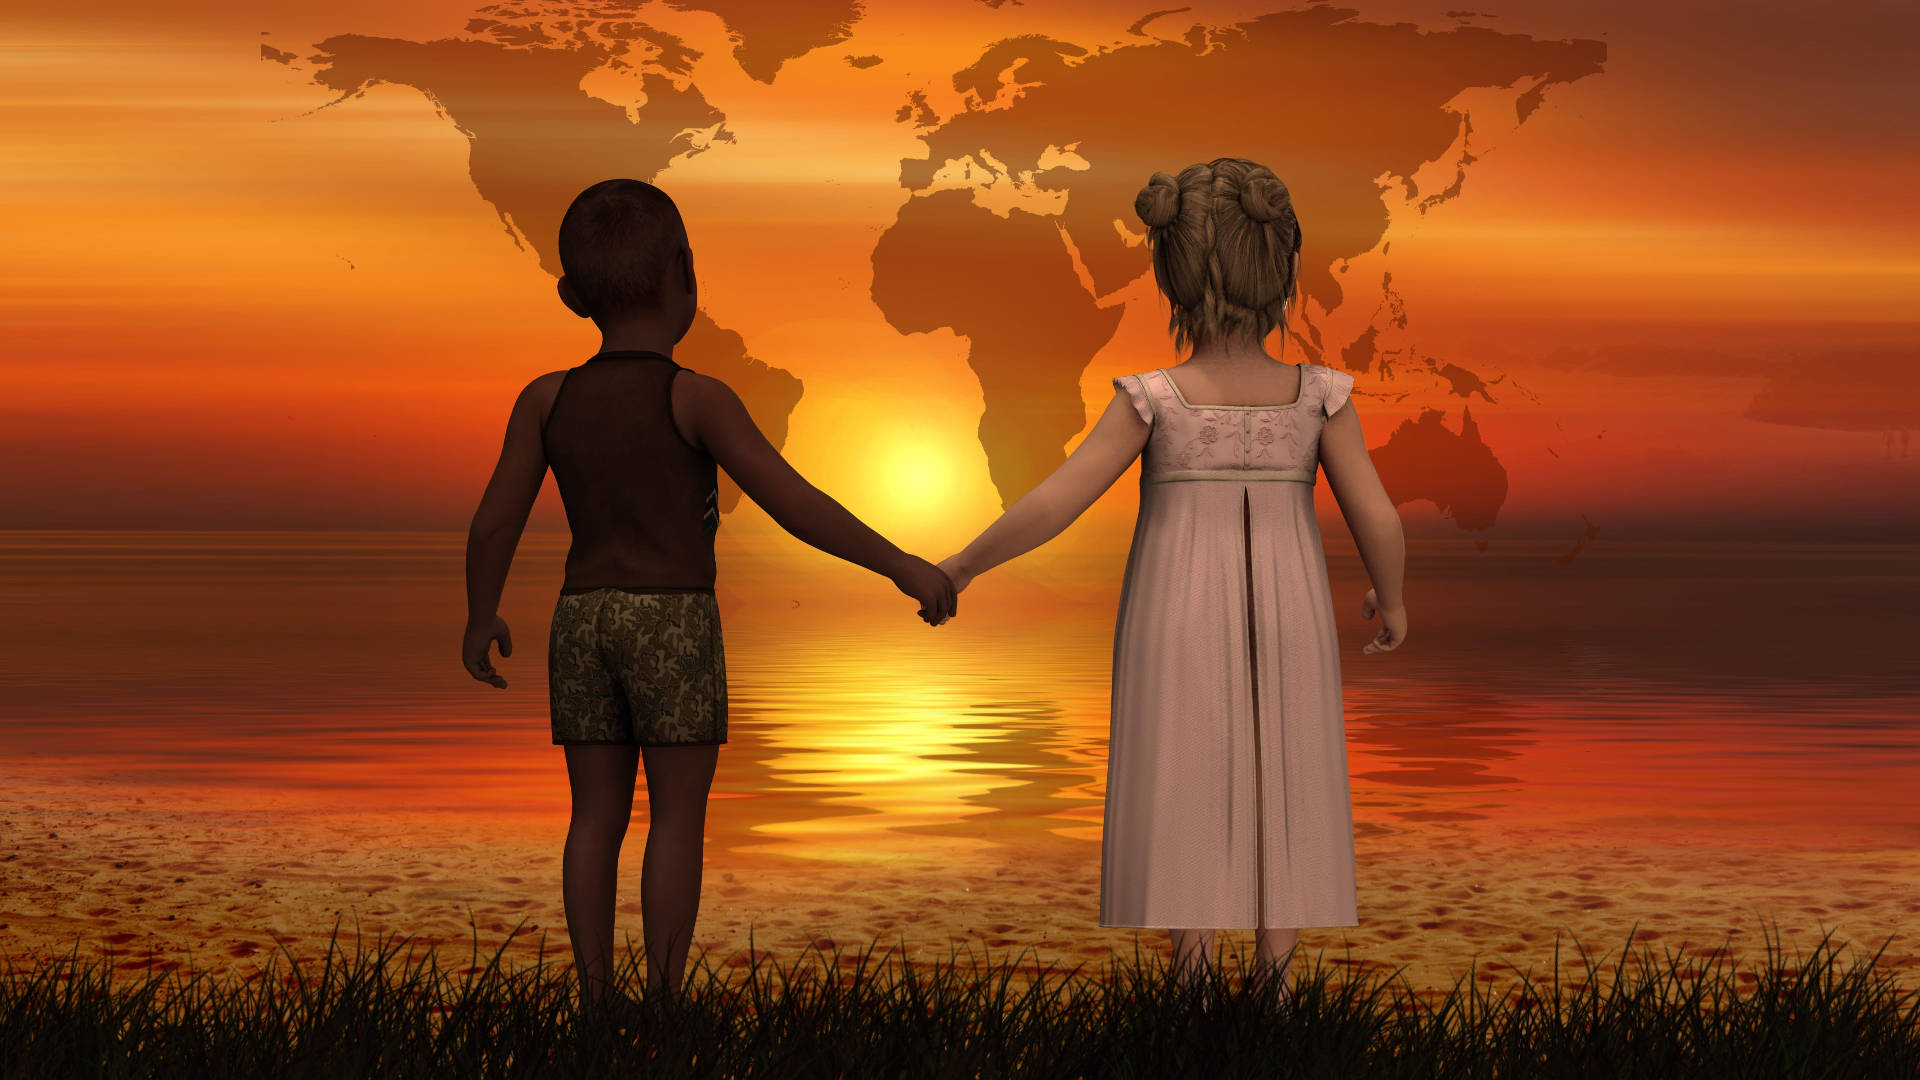 Children Holding Hands For World Peace Wallpaper